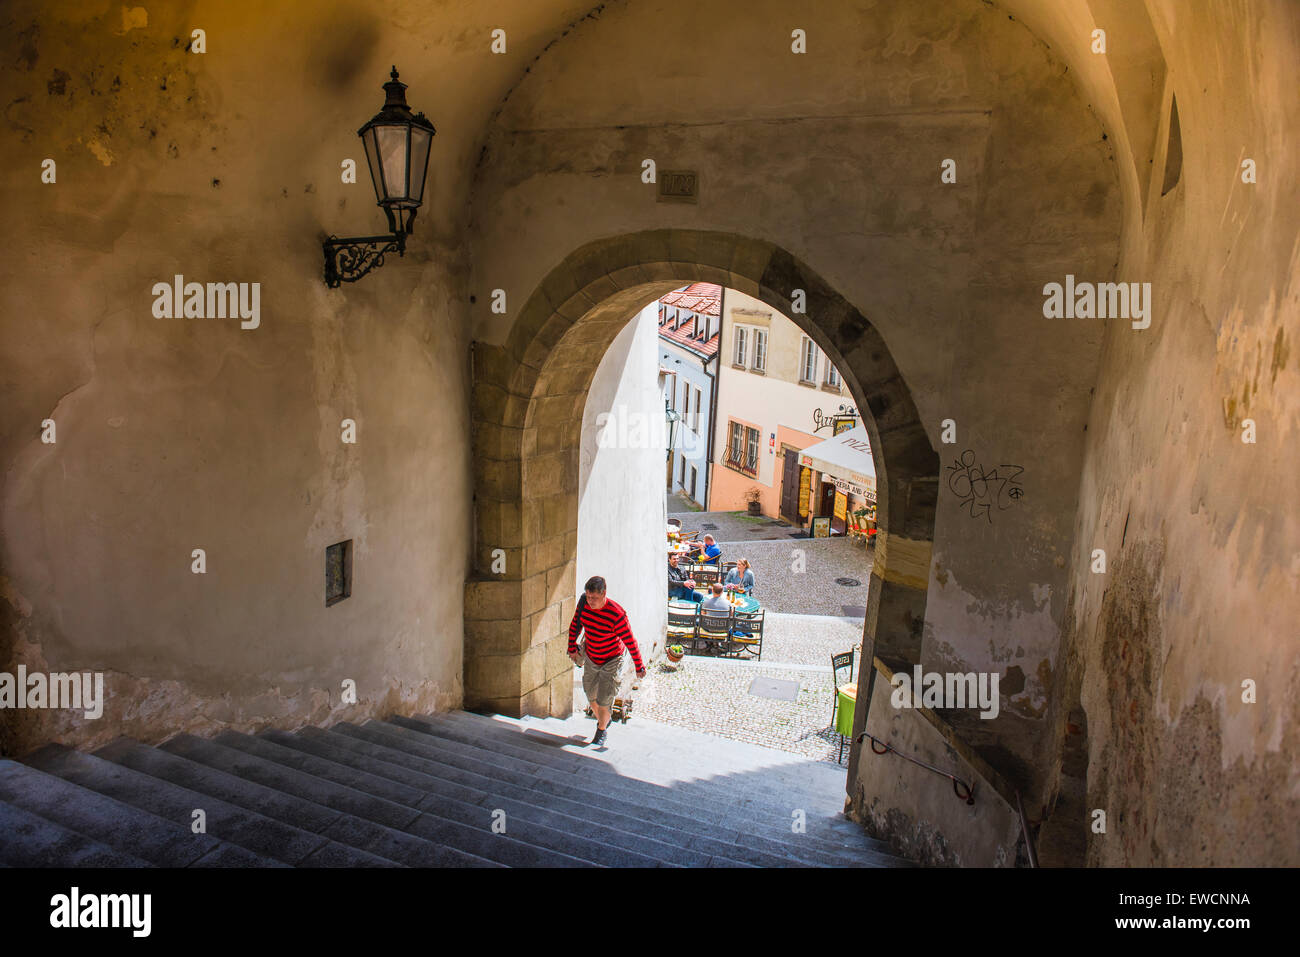 Vista di un uomo di entrare in un tipico porticato medioevale nel centro storico della cittadina Hradcany quartiere di Praga, Repubblica Ceca. Foto Stock